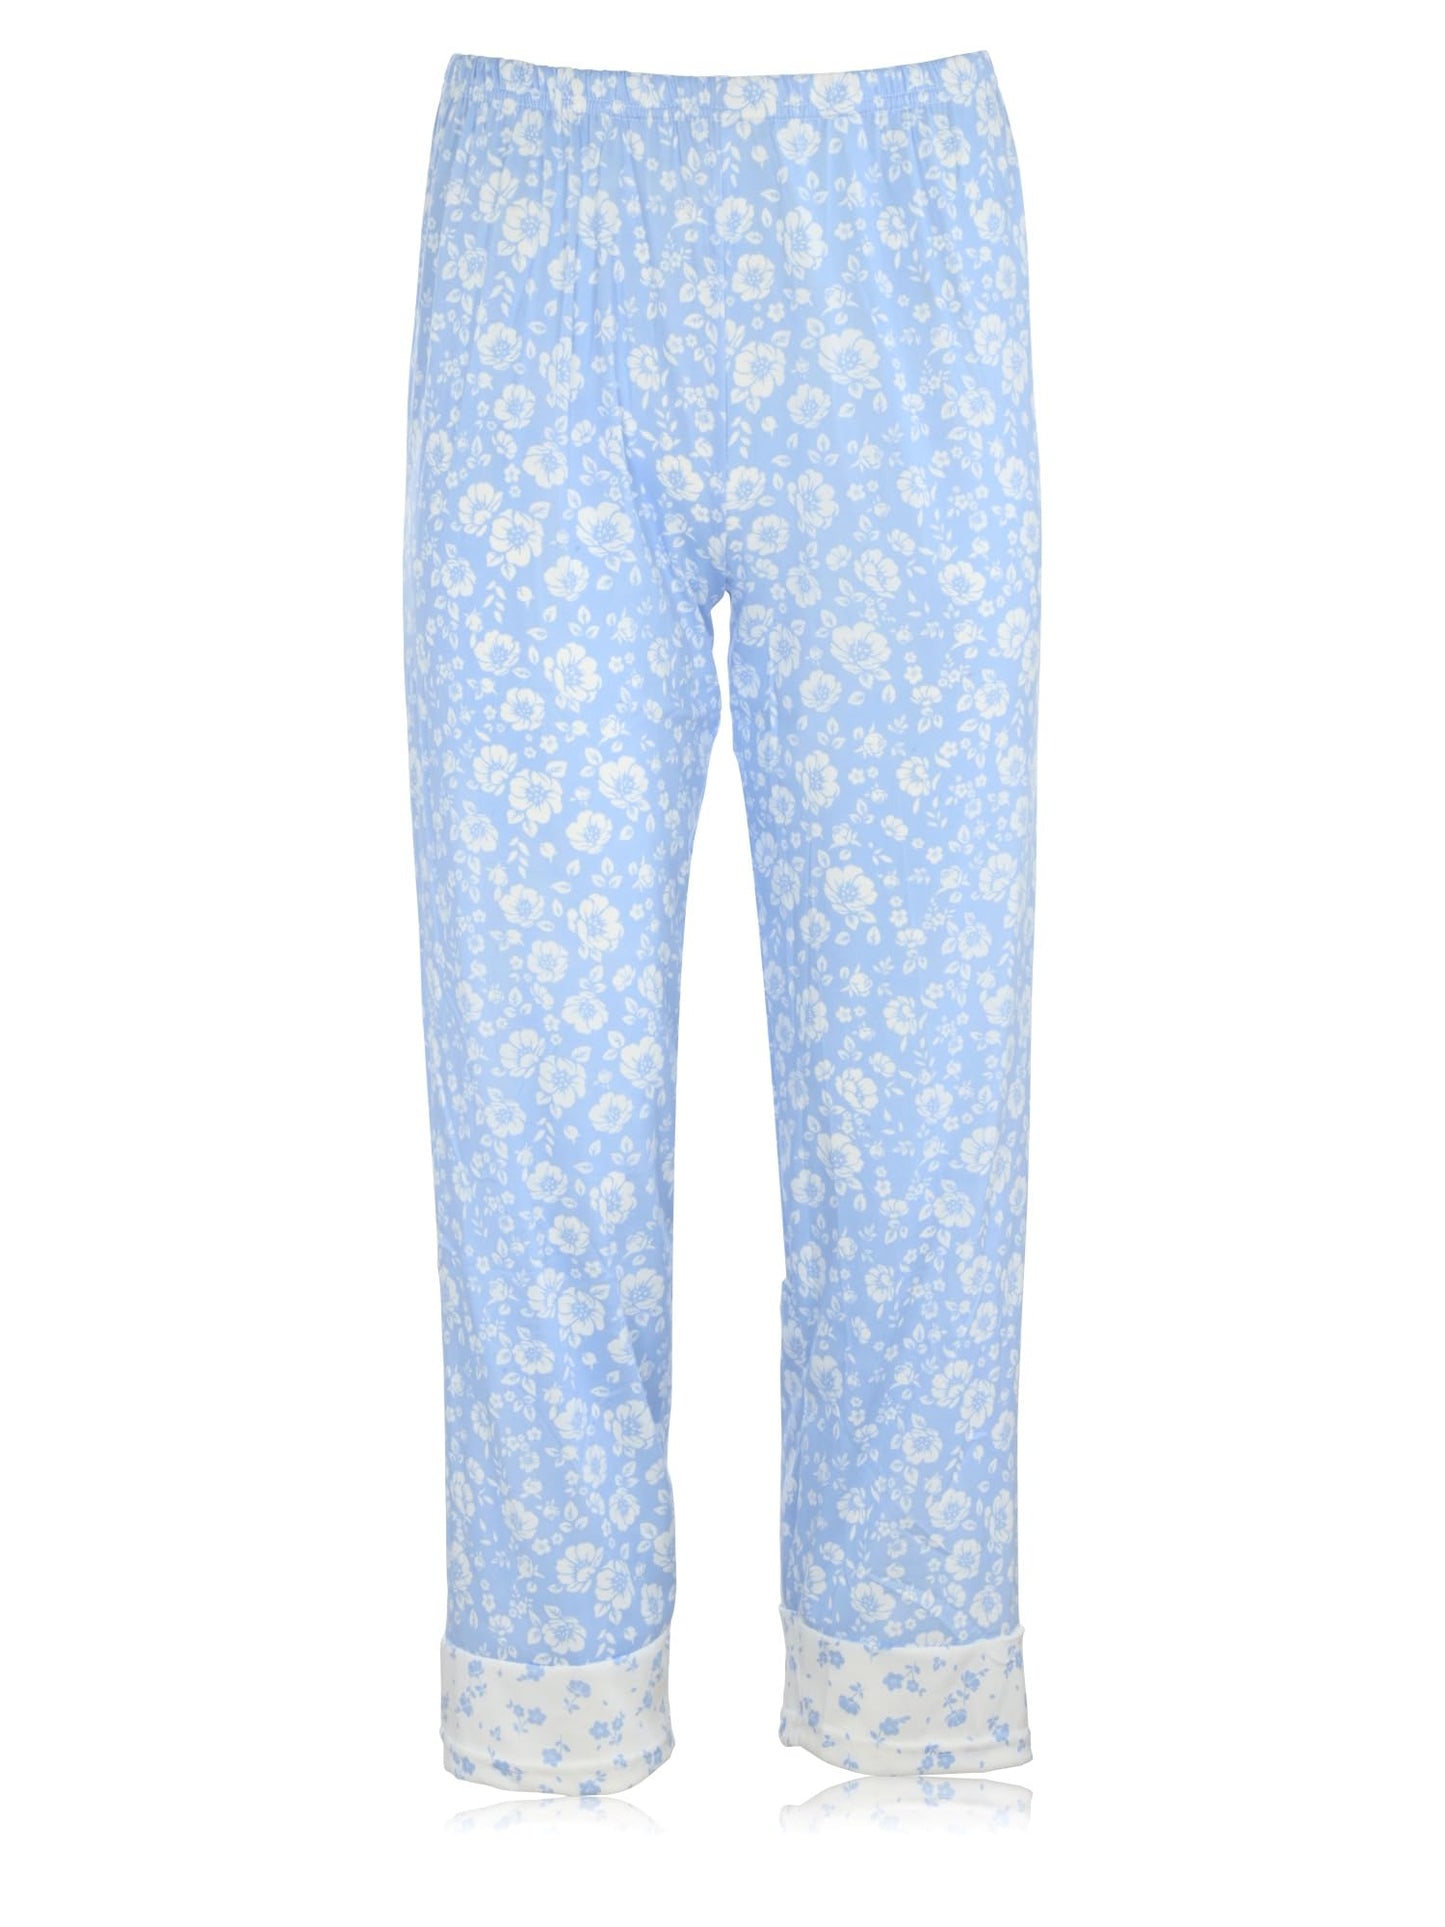 JEFFRICO Womens Sleeveless Pajamas For Women Ankle Length Set Sleepwear Soft Pajamas